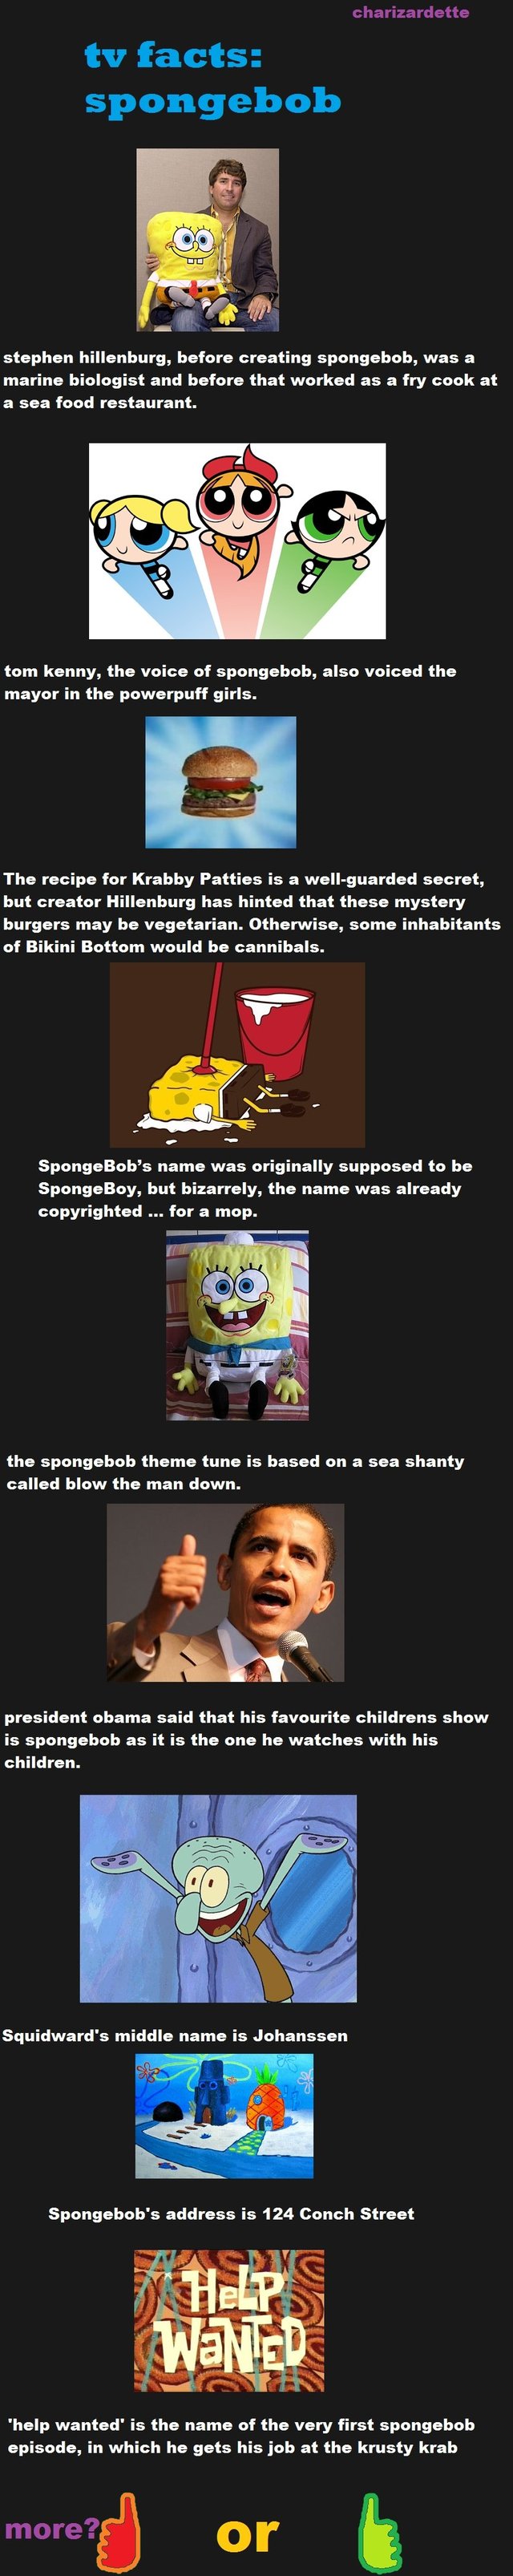 spongebob porn porn media original spongebob